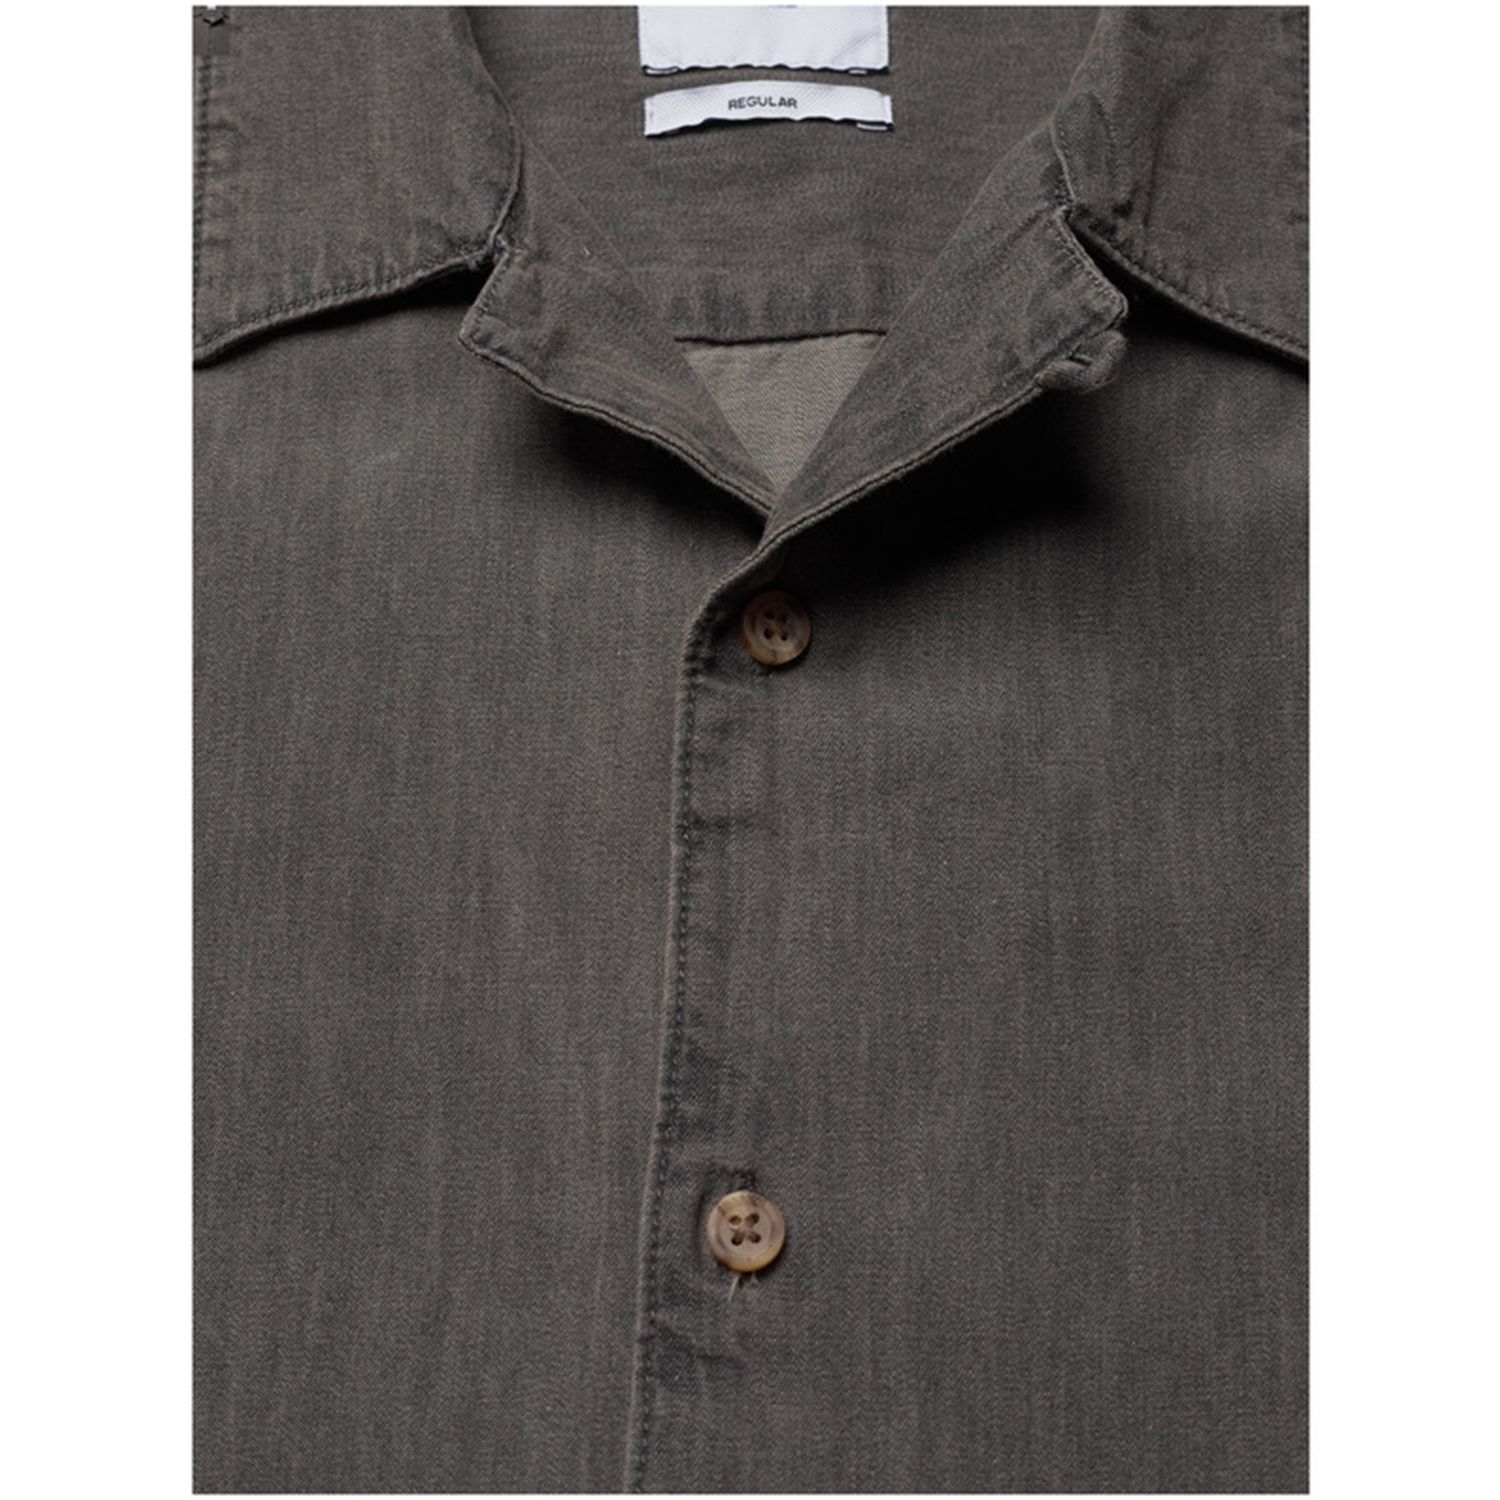 پیراهن آستین کوتاه مردانه اونلی اند سانز مدل جین کد AUGUST-22016591 رنگ خاکستری -  - 3